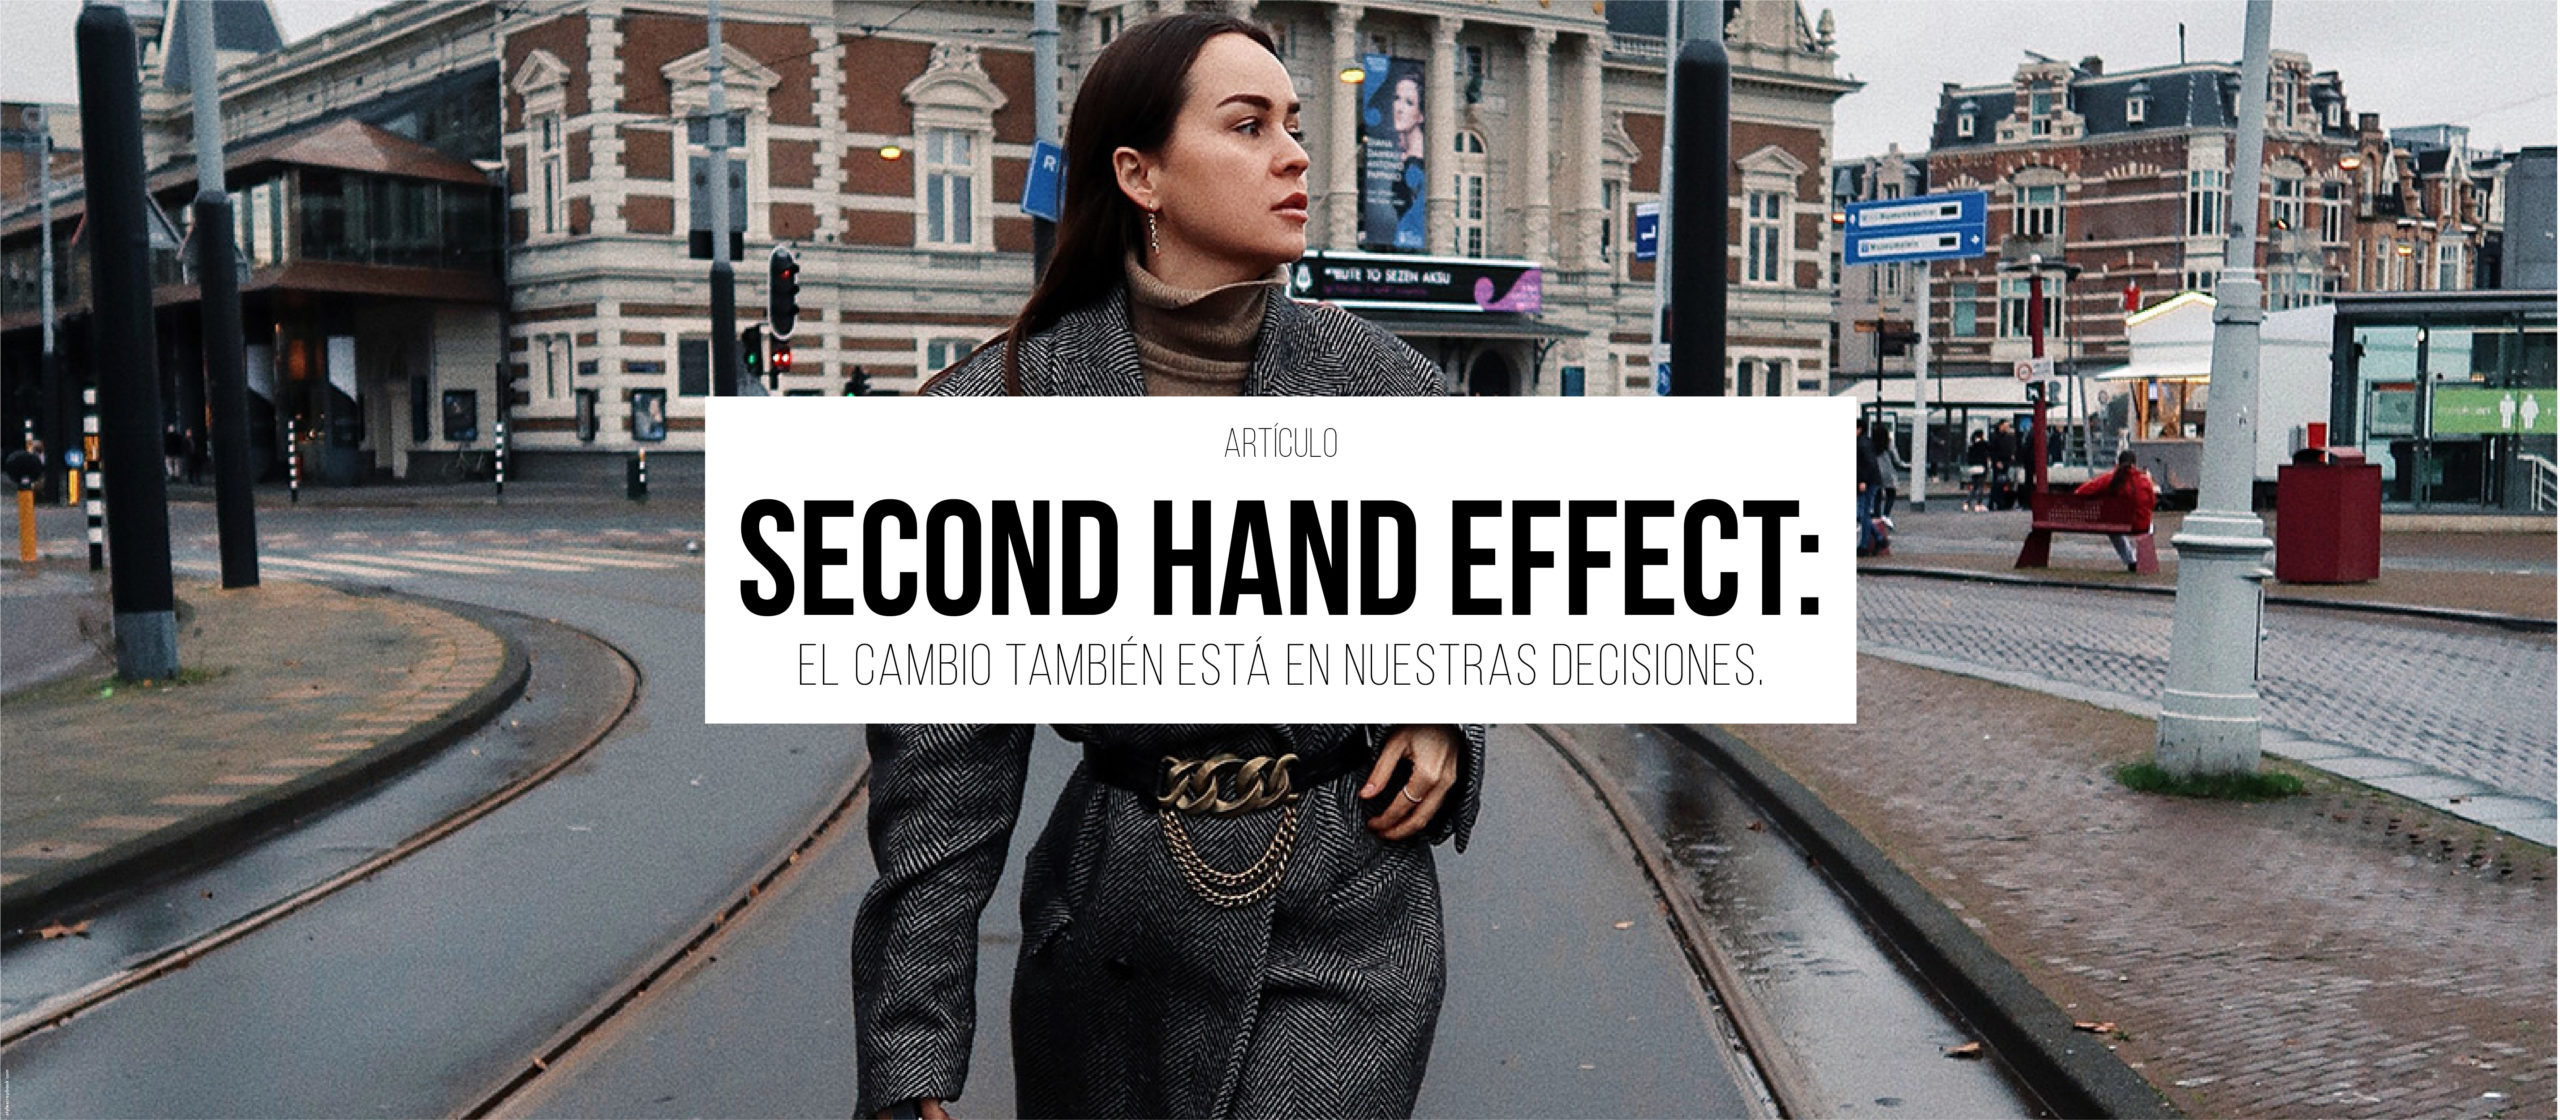 Second Hand Effect: el cambio también está en nuestras decisiones